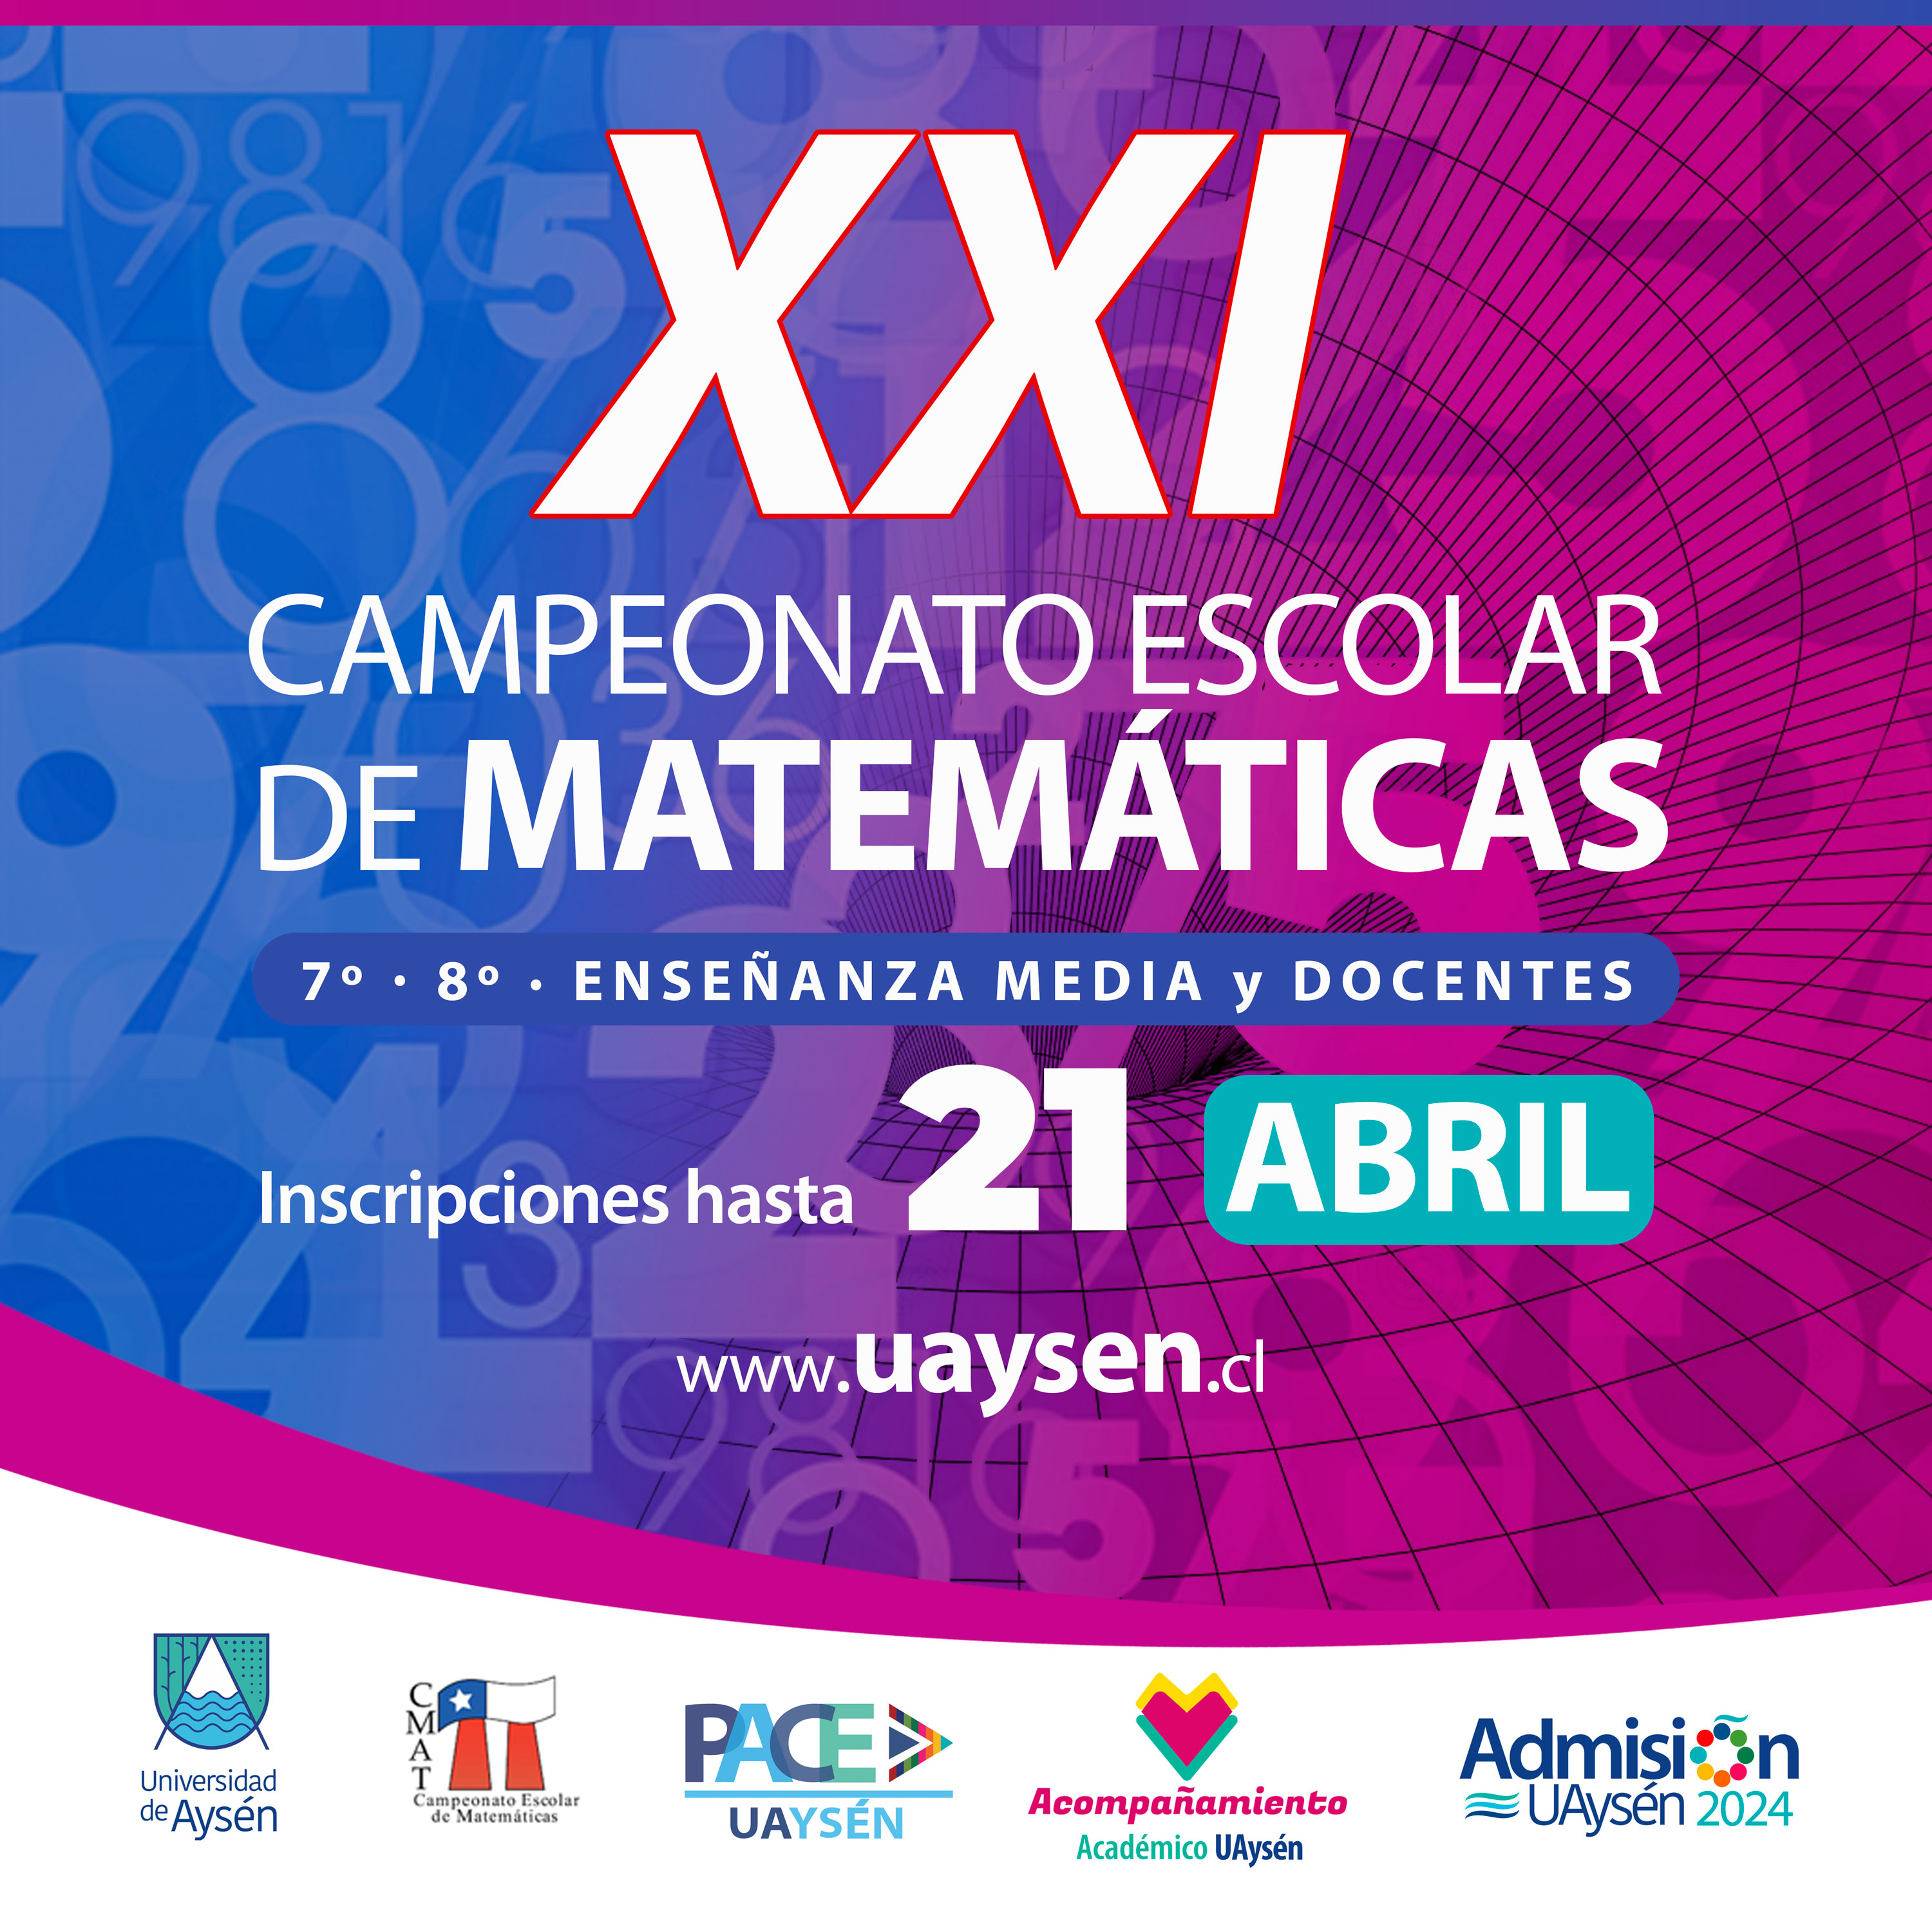 XXI Campeonato Escolar de Matemáticas